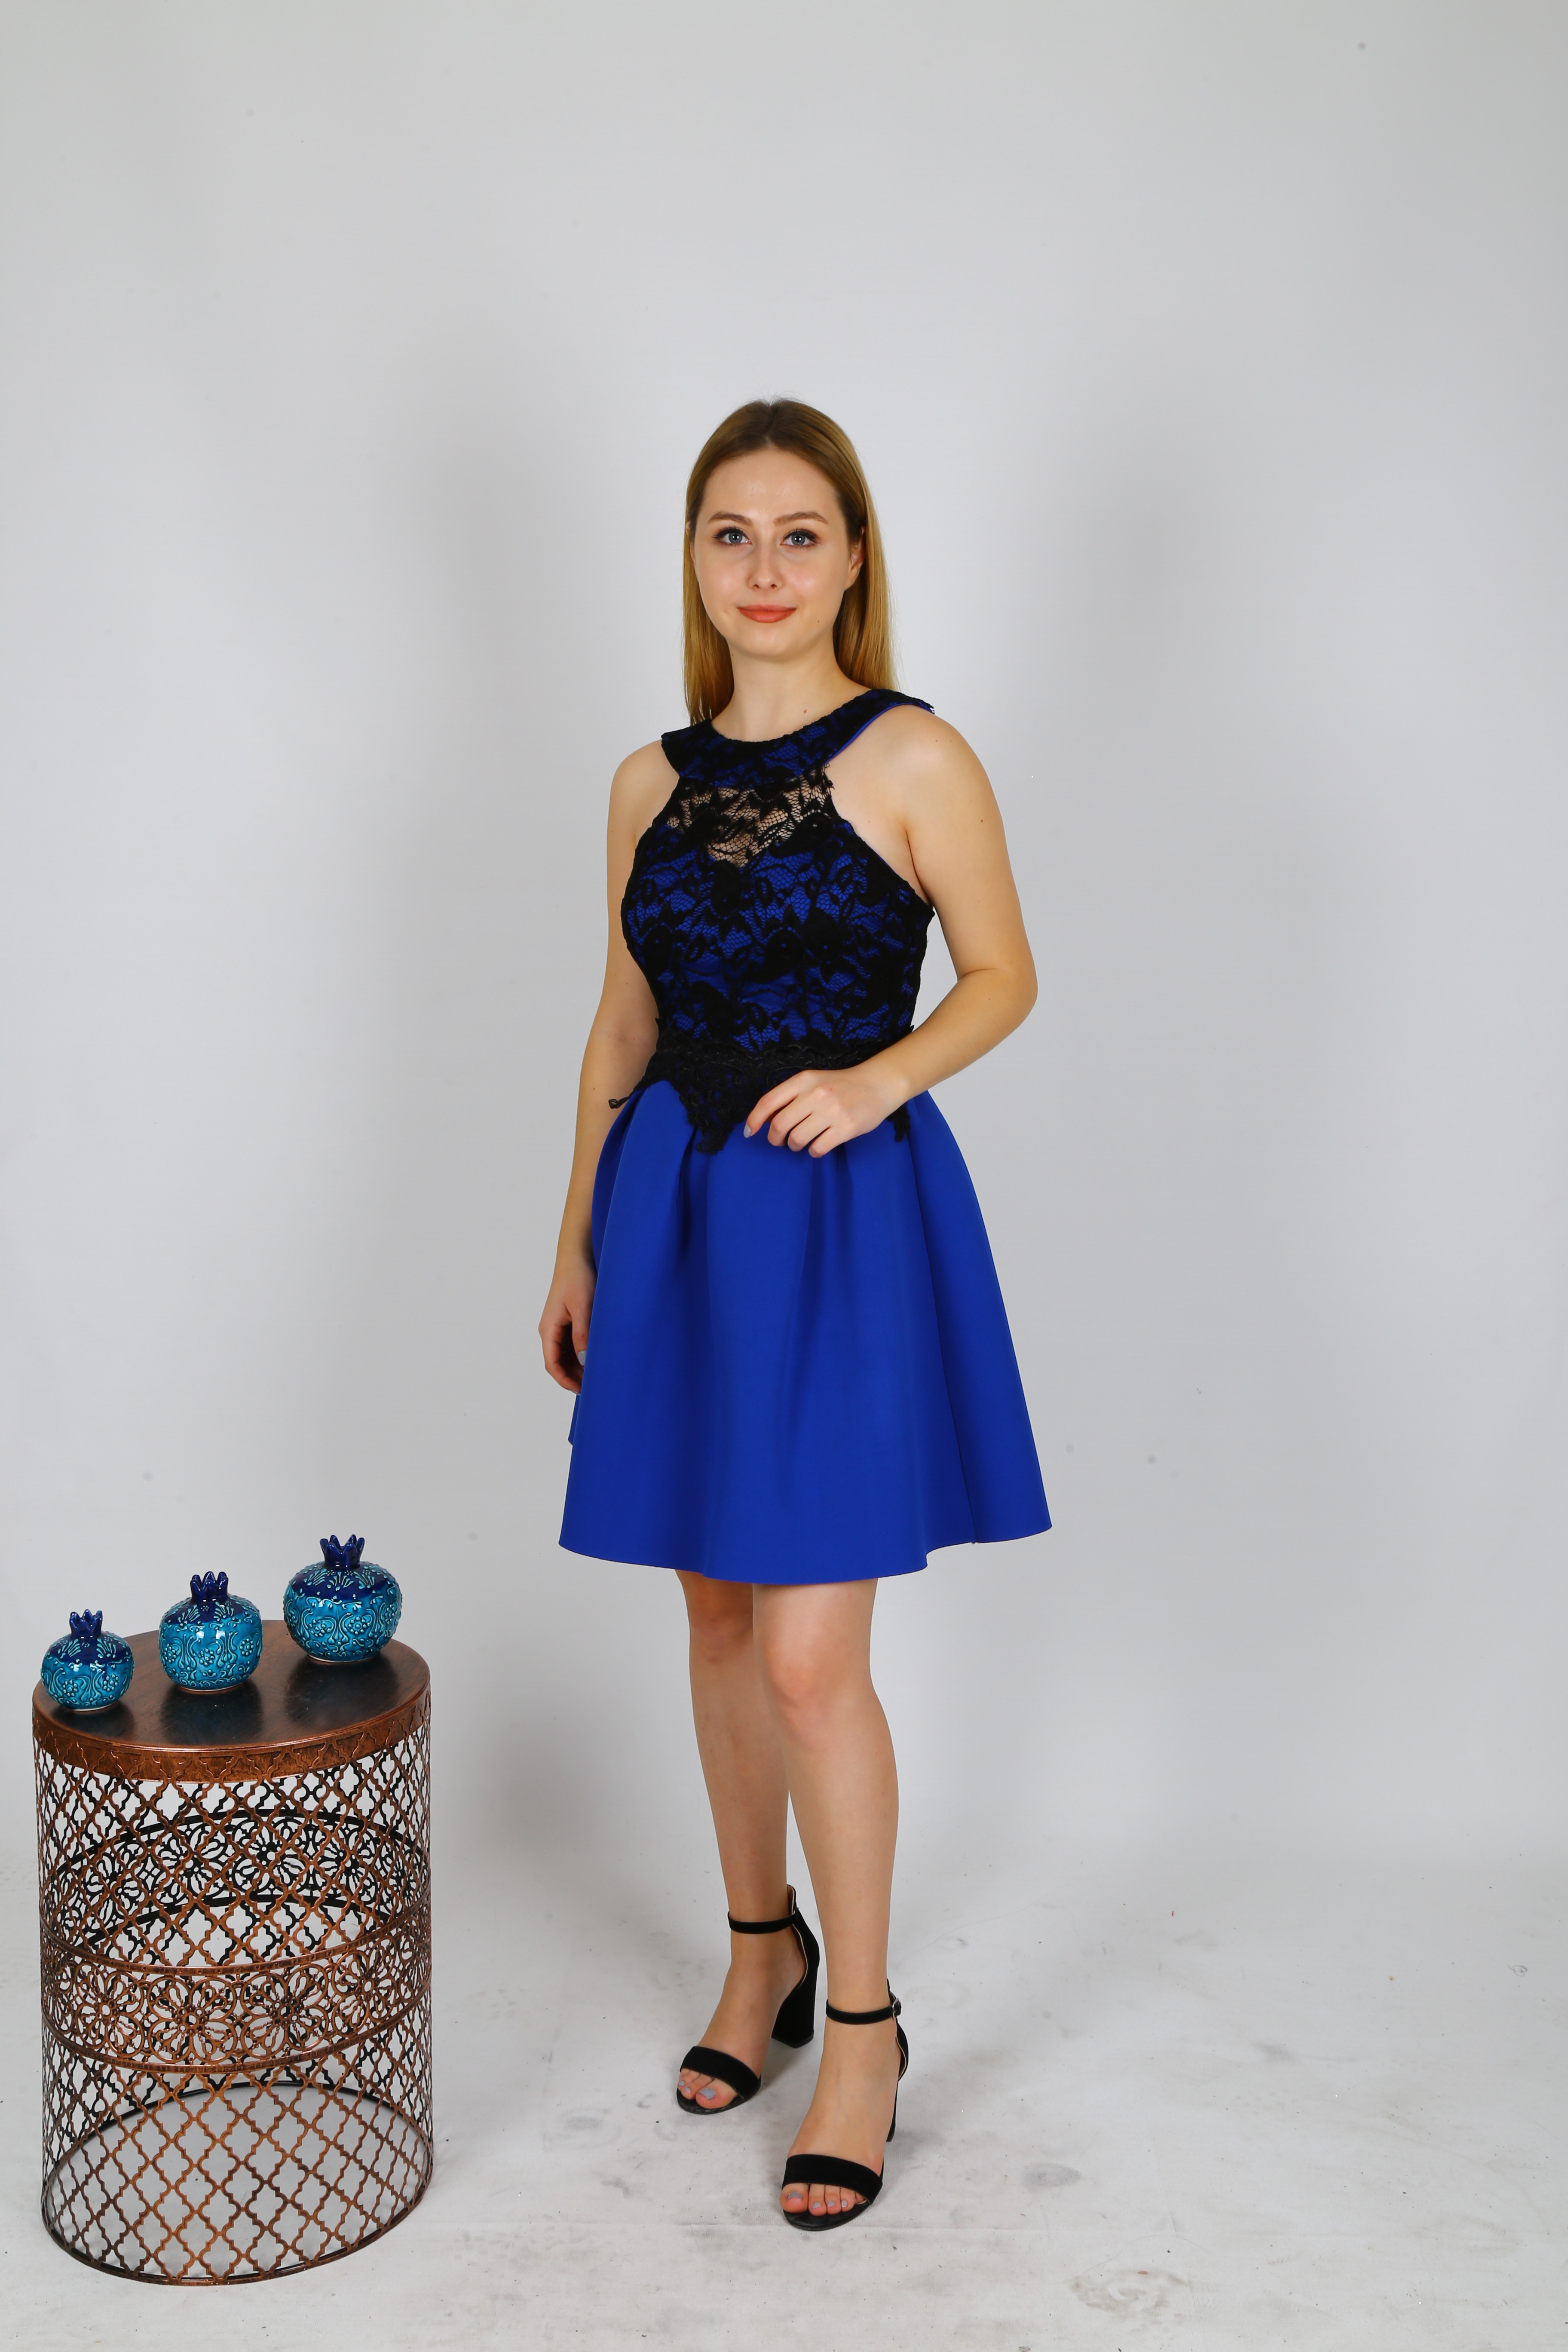 Meg Mavi Kabarık Etek Mini Mezuniyet Elbise (0161)